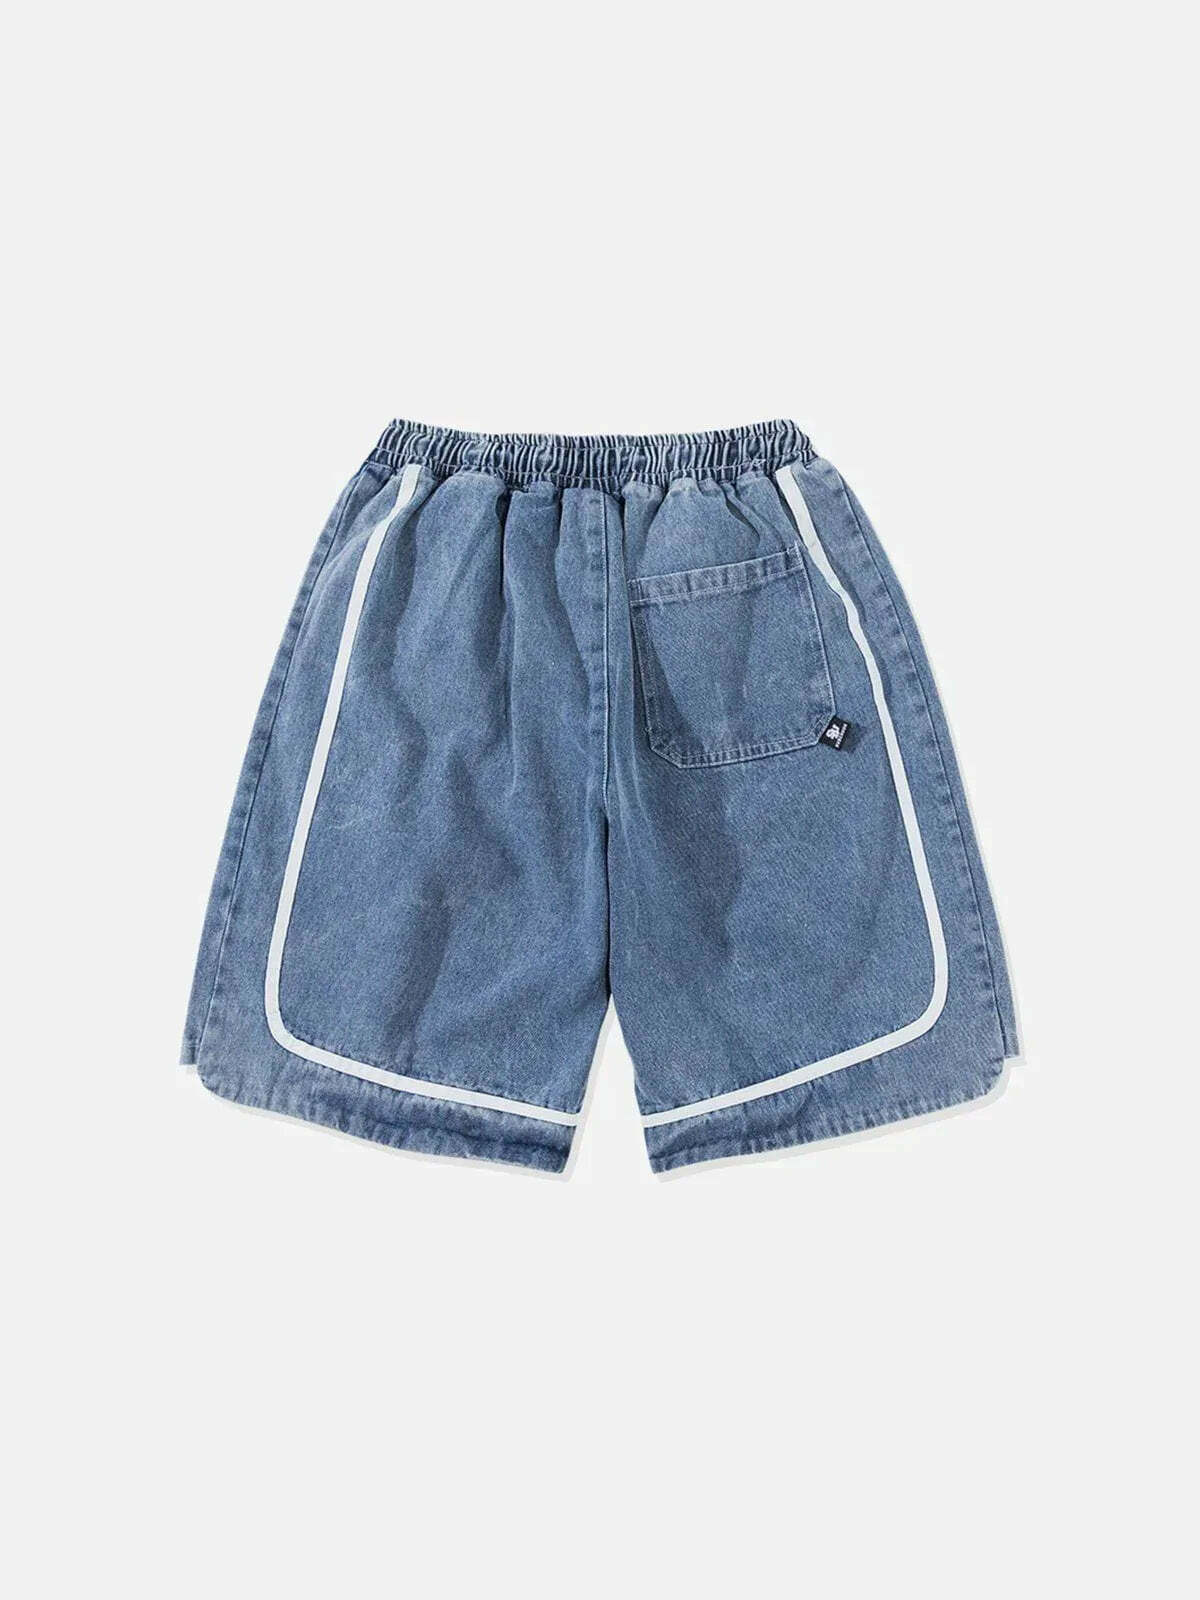 patchwork denim shorts edgy streetwear statement 7231